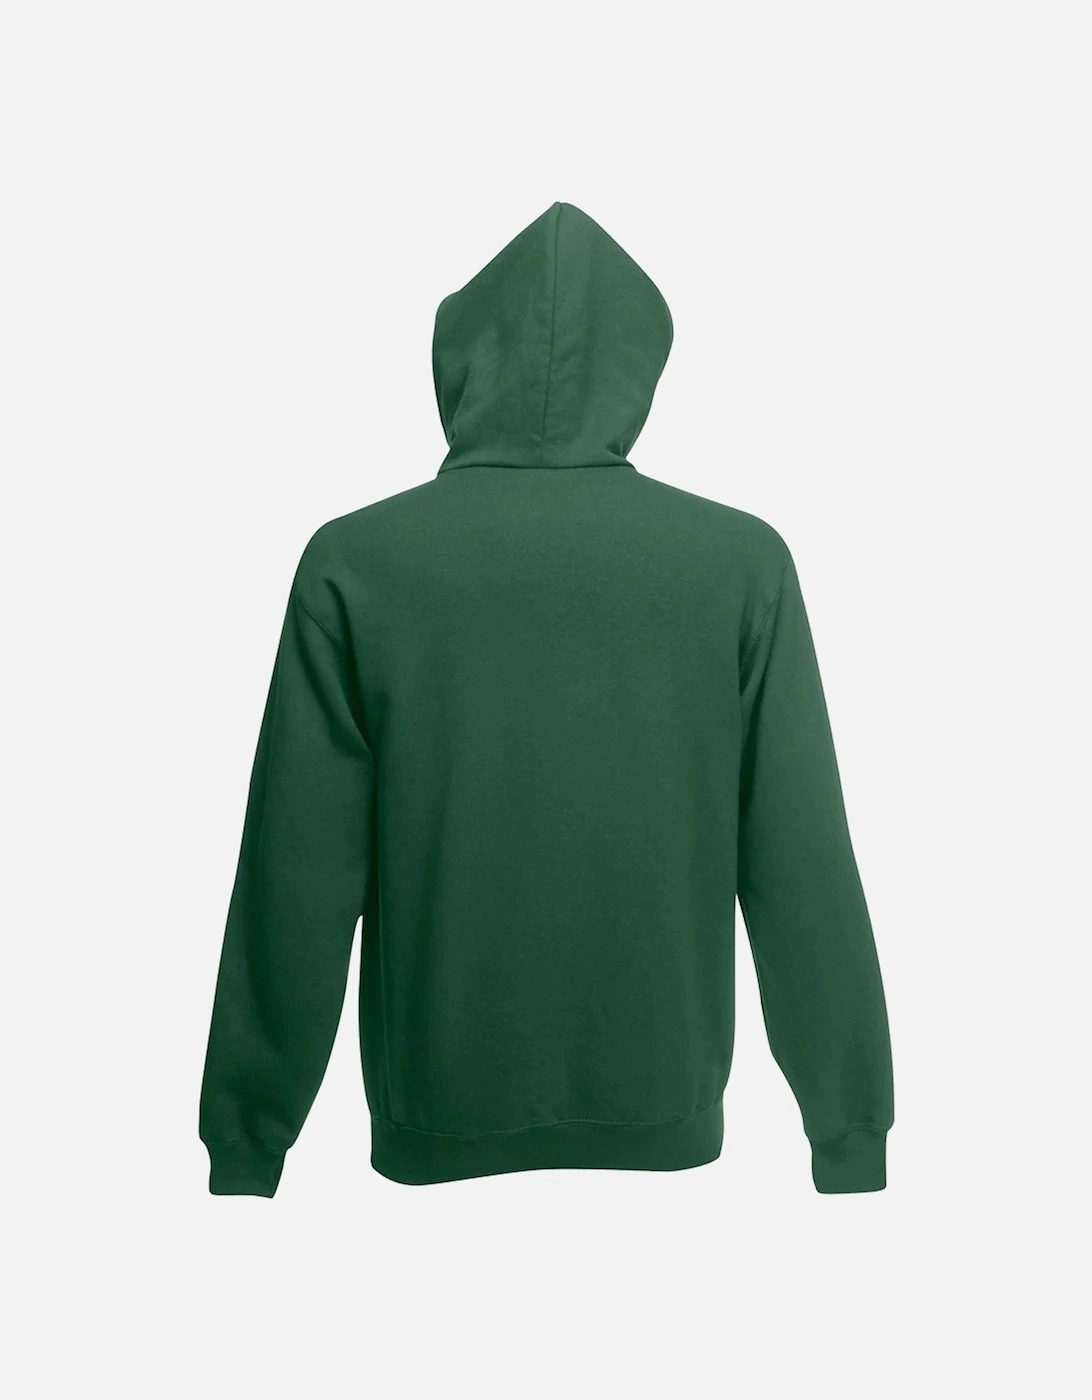 Mens Hooded Sweatshirt / Hoodie